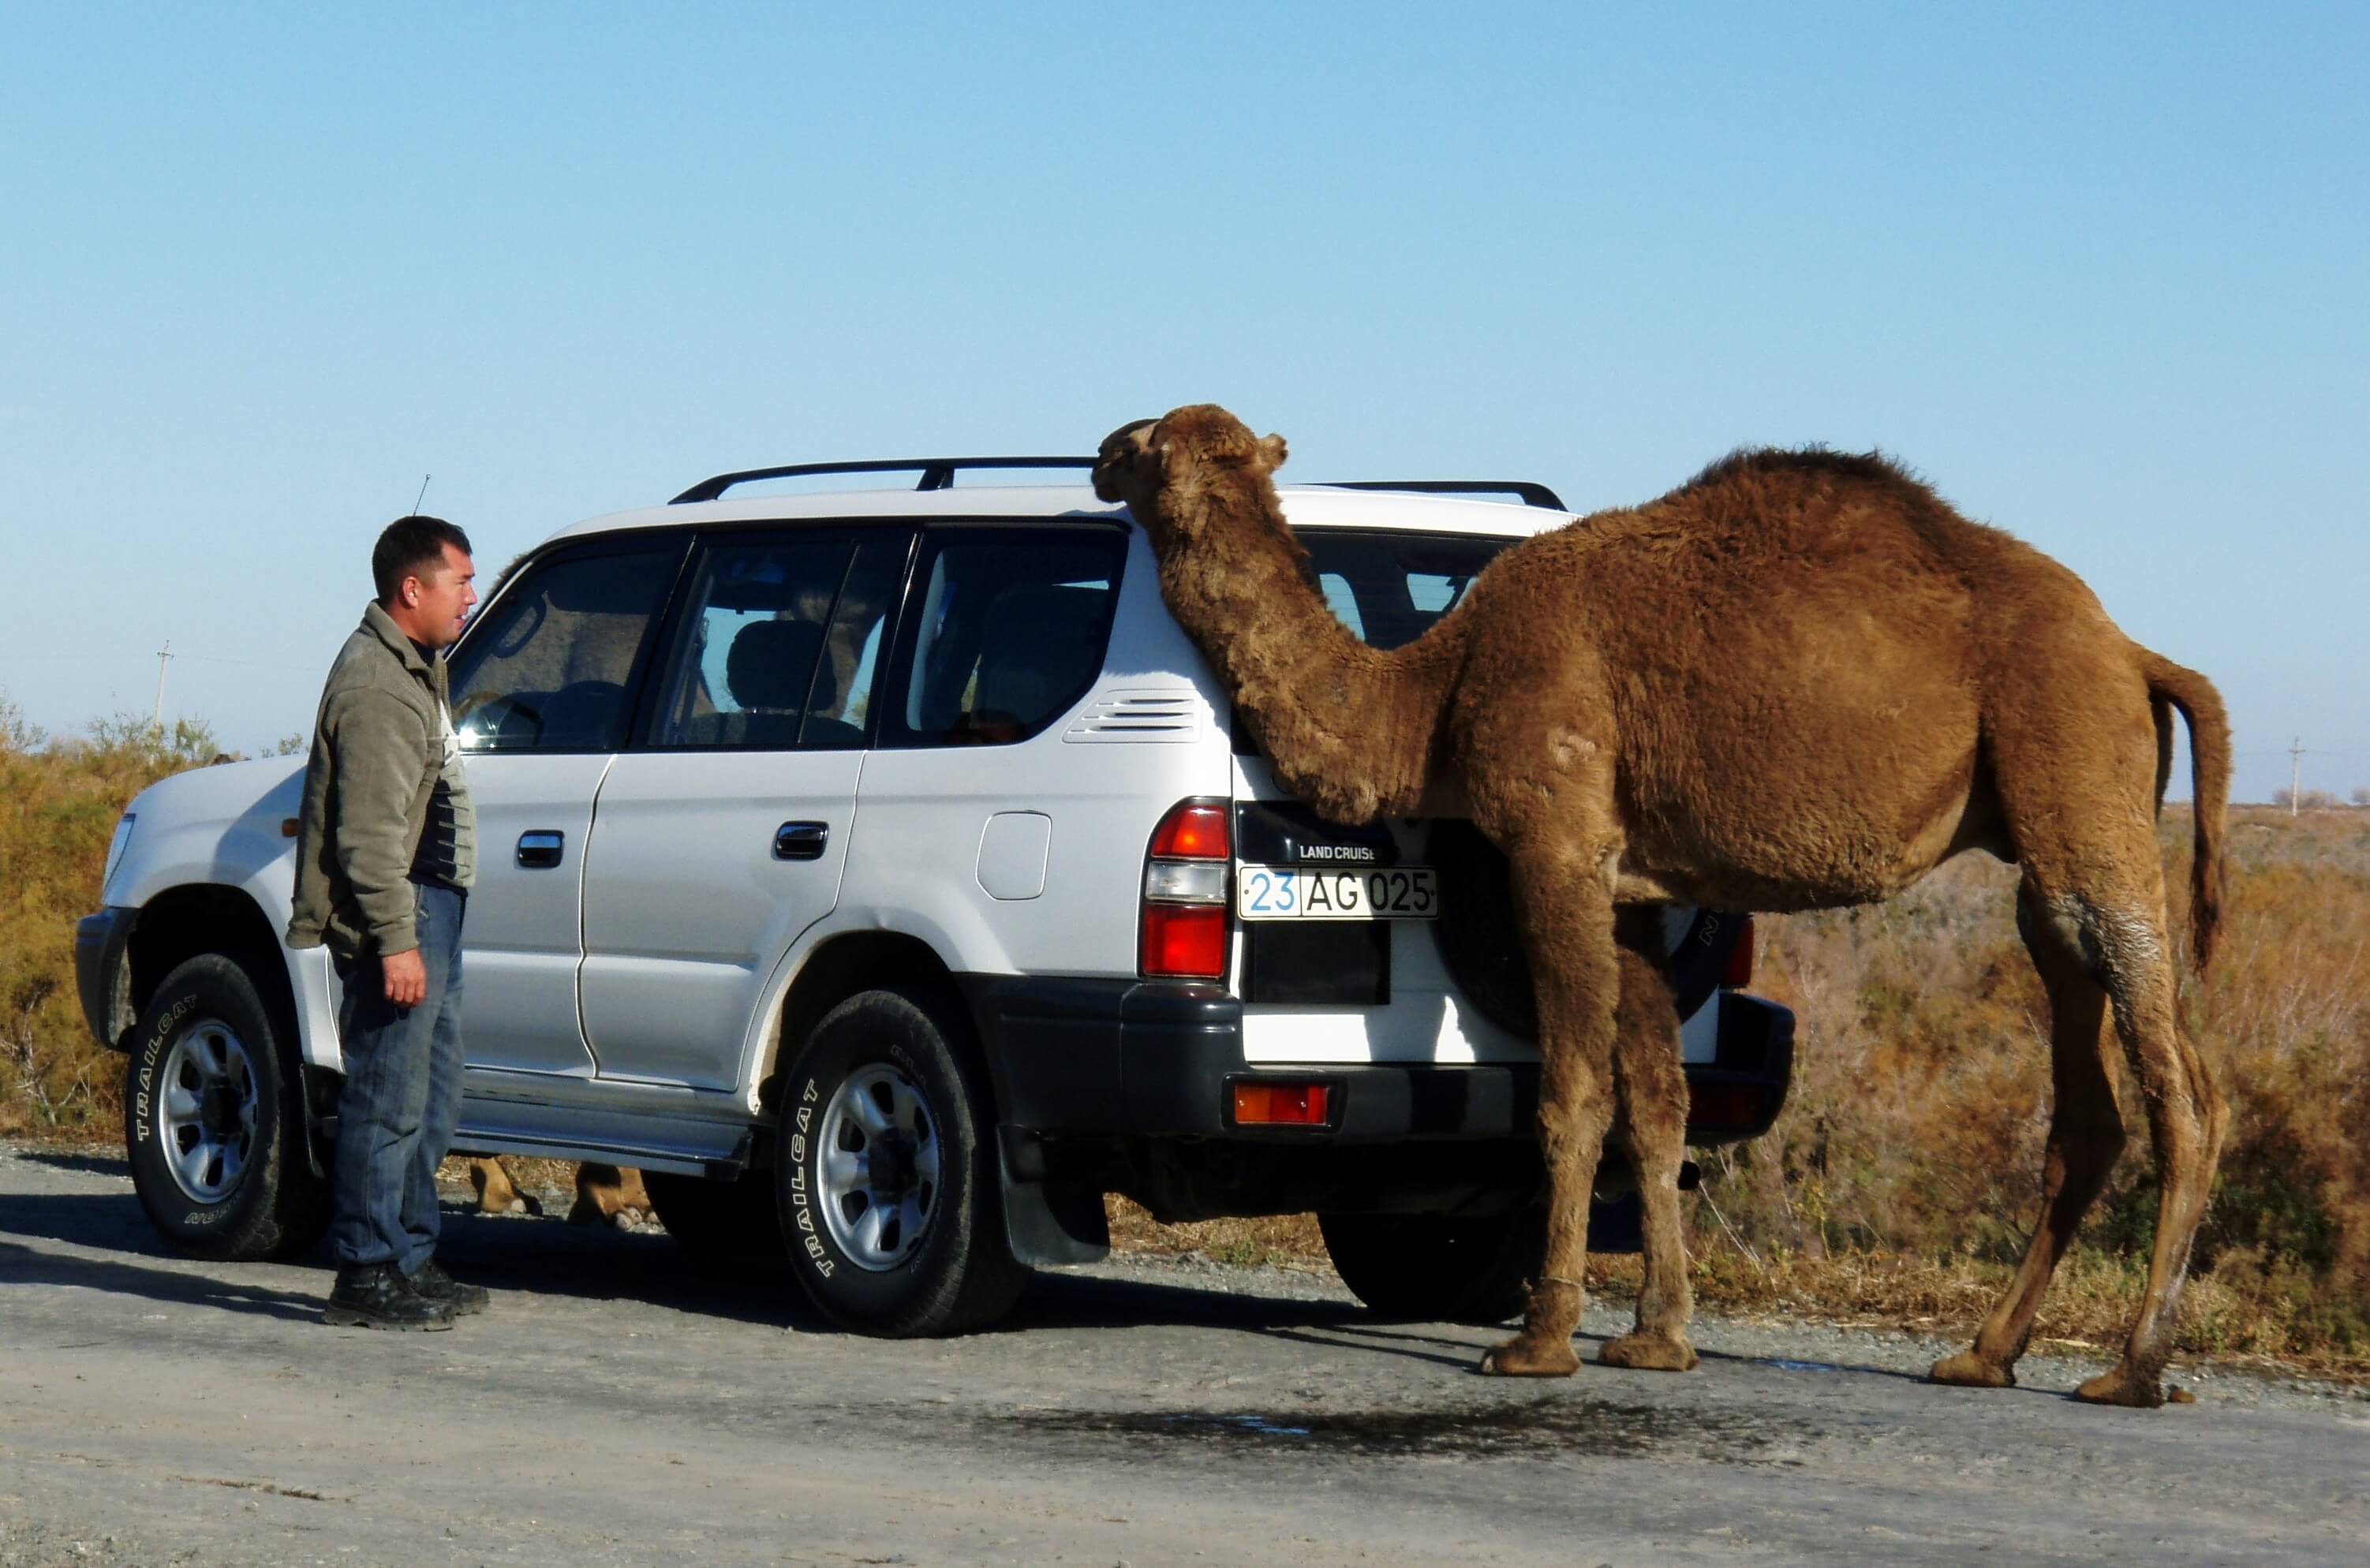 oezbekistan, jeep en kameel.jpg